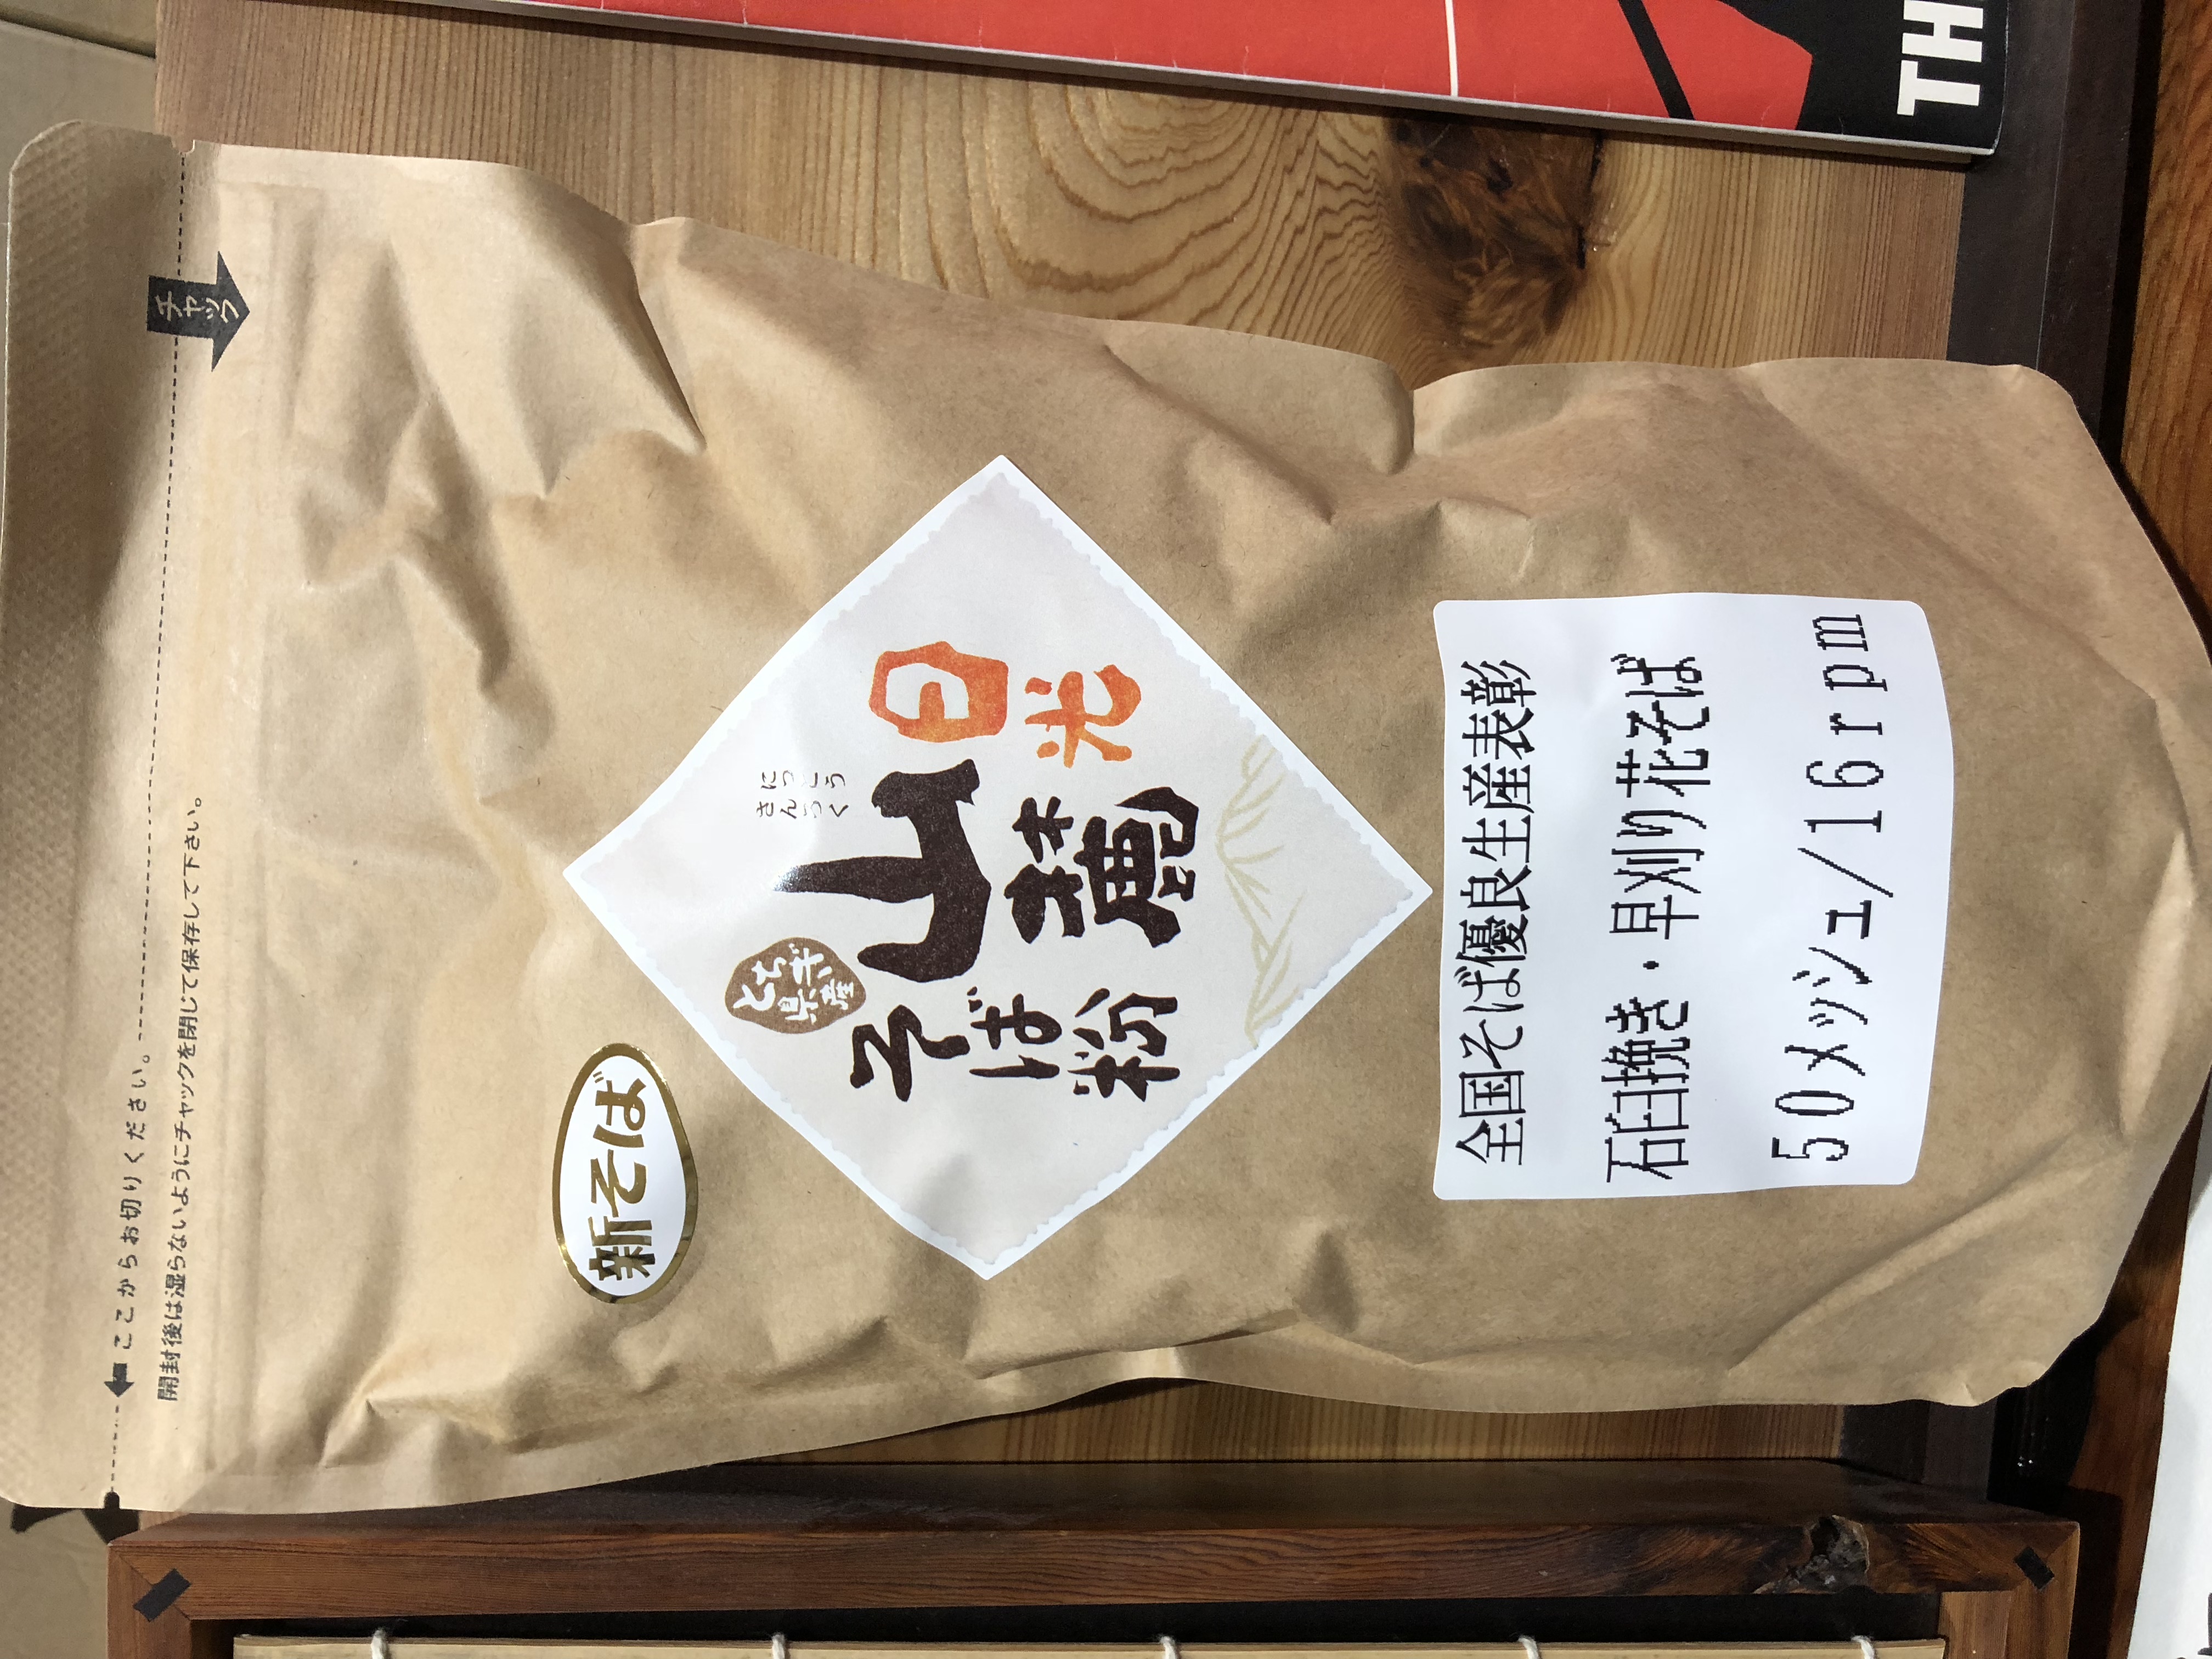 石臼絹挽きそば粉「早刈り花そば®」 – 栃木県中小企業団体中央会